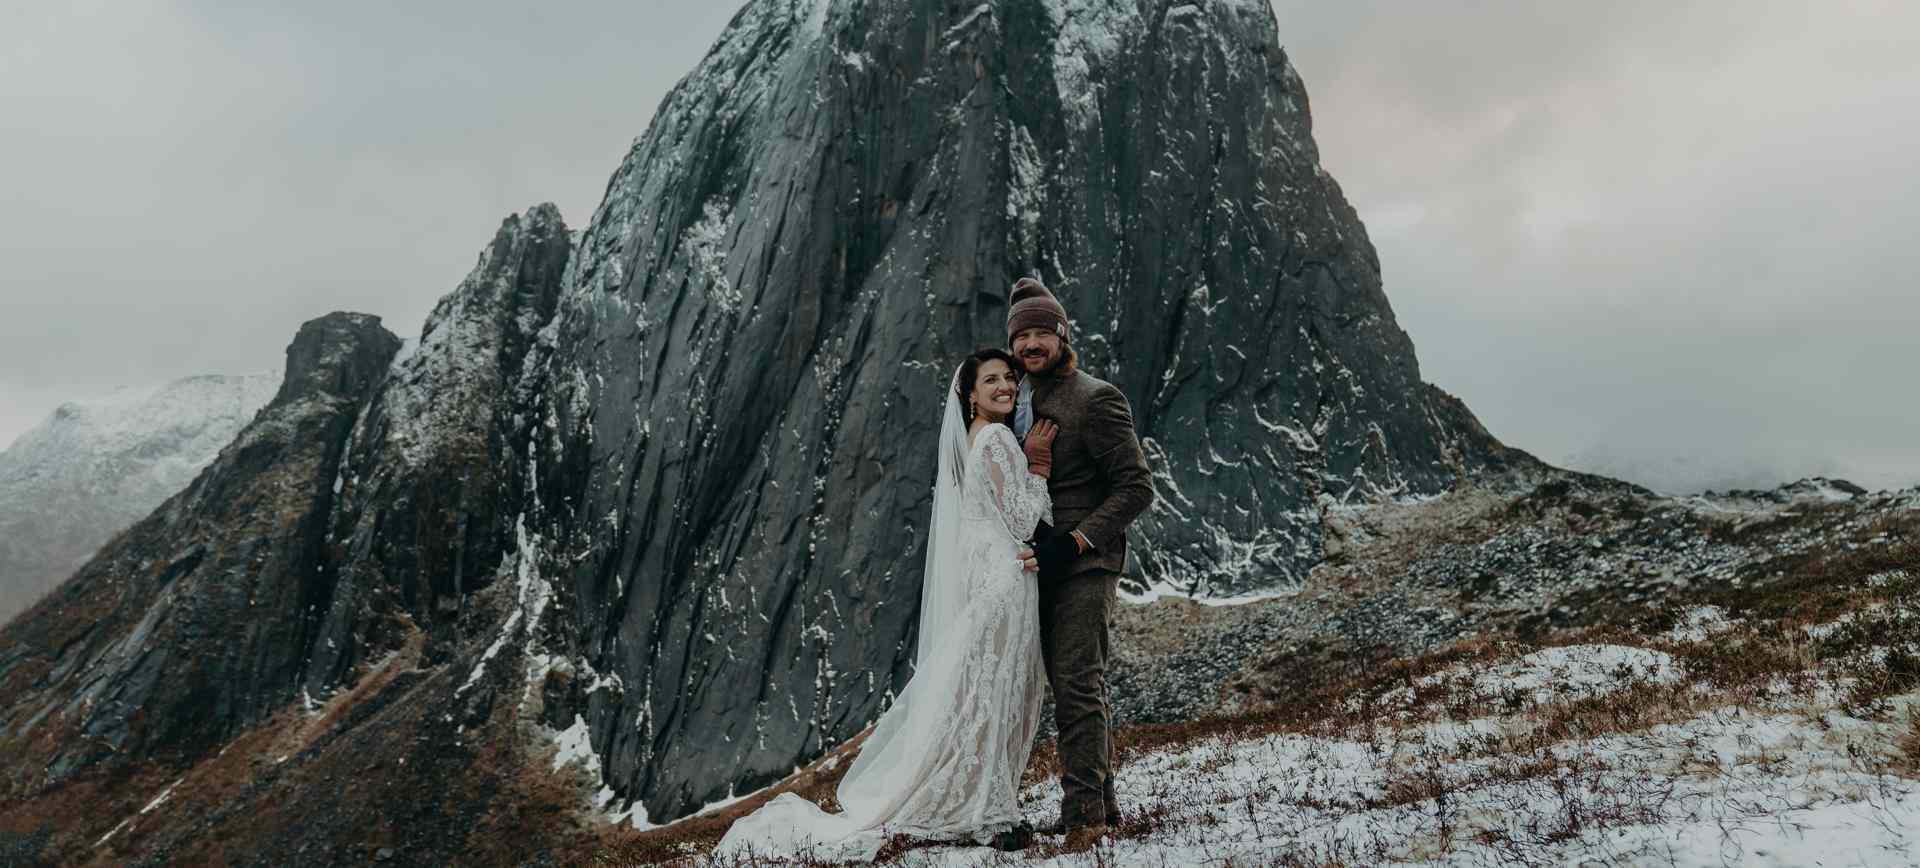 norway elopement - fairytale wedding in the arctic